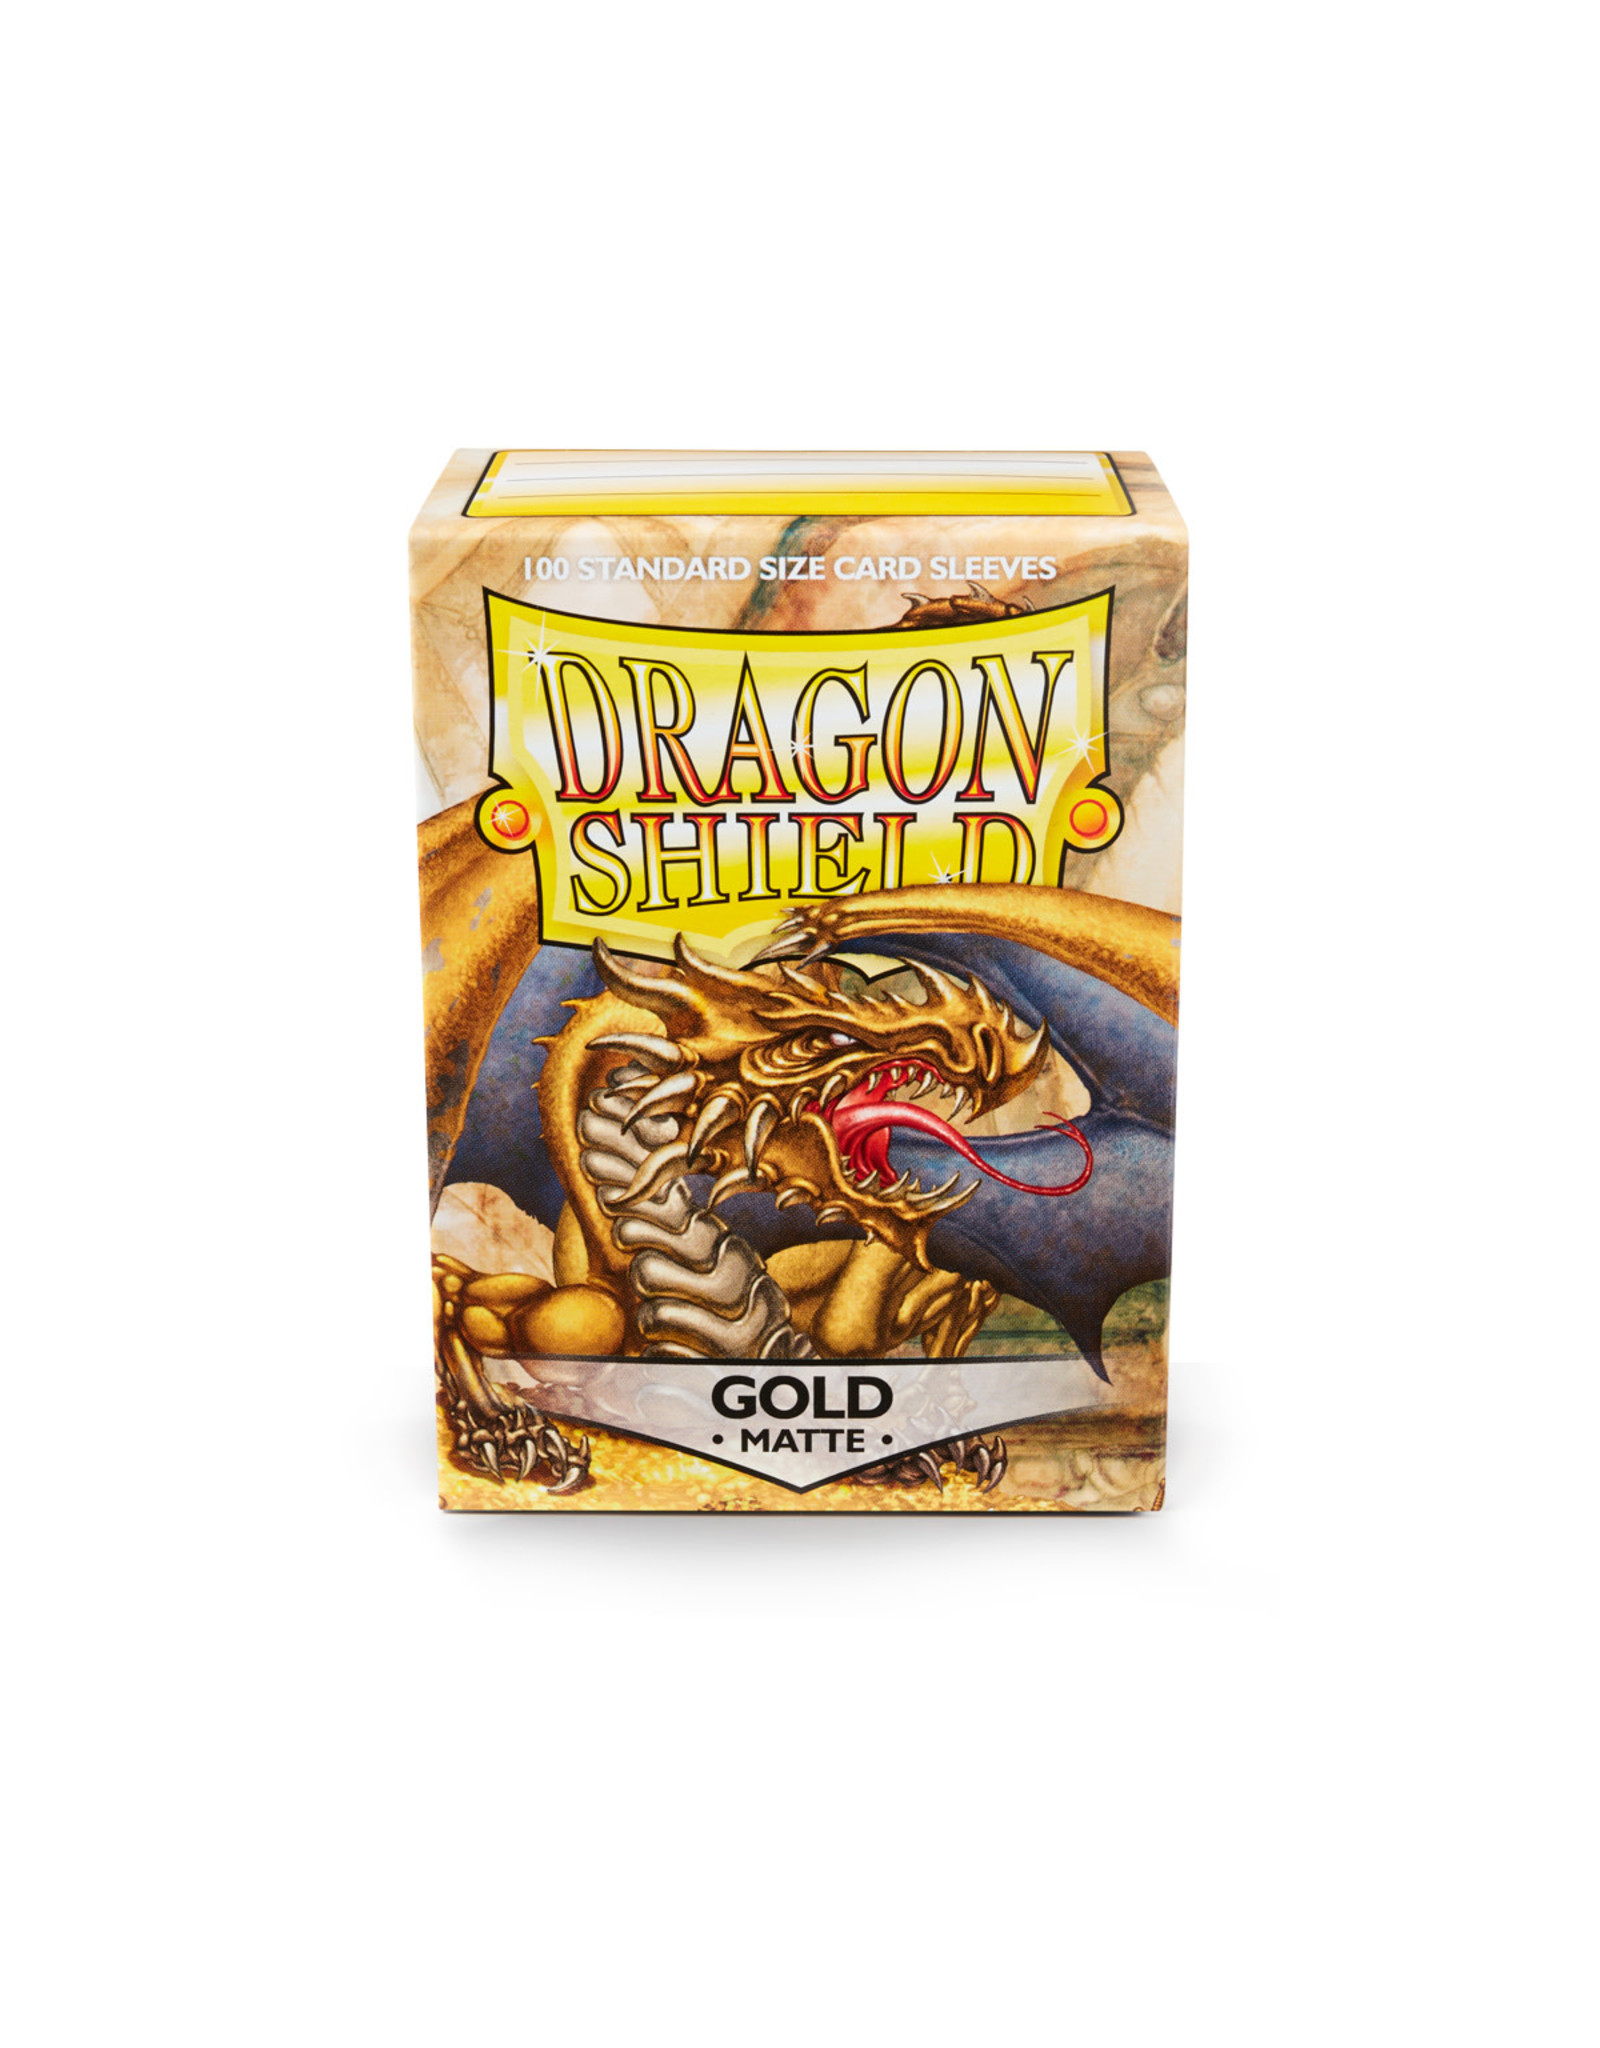 Dragon Shields Dragon Shield Sleeves 100ct - Matte Gold